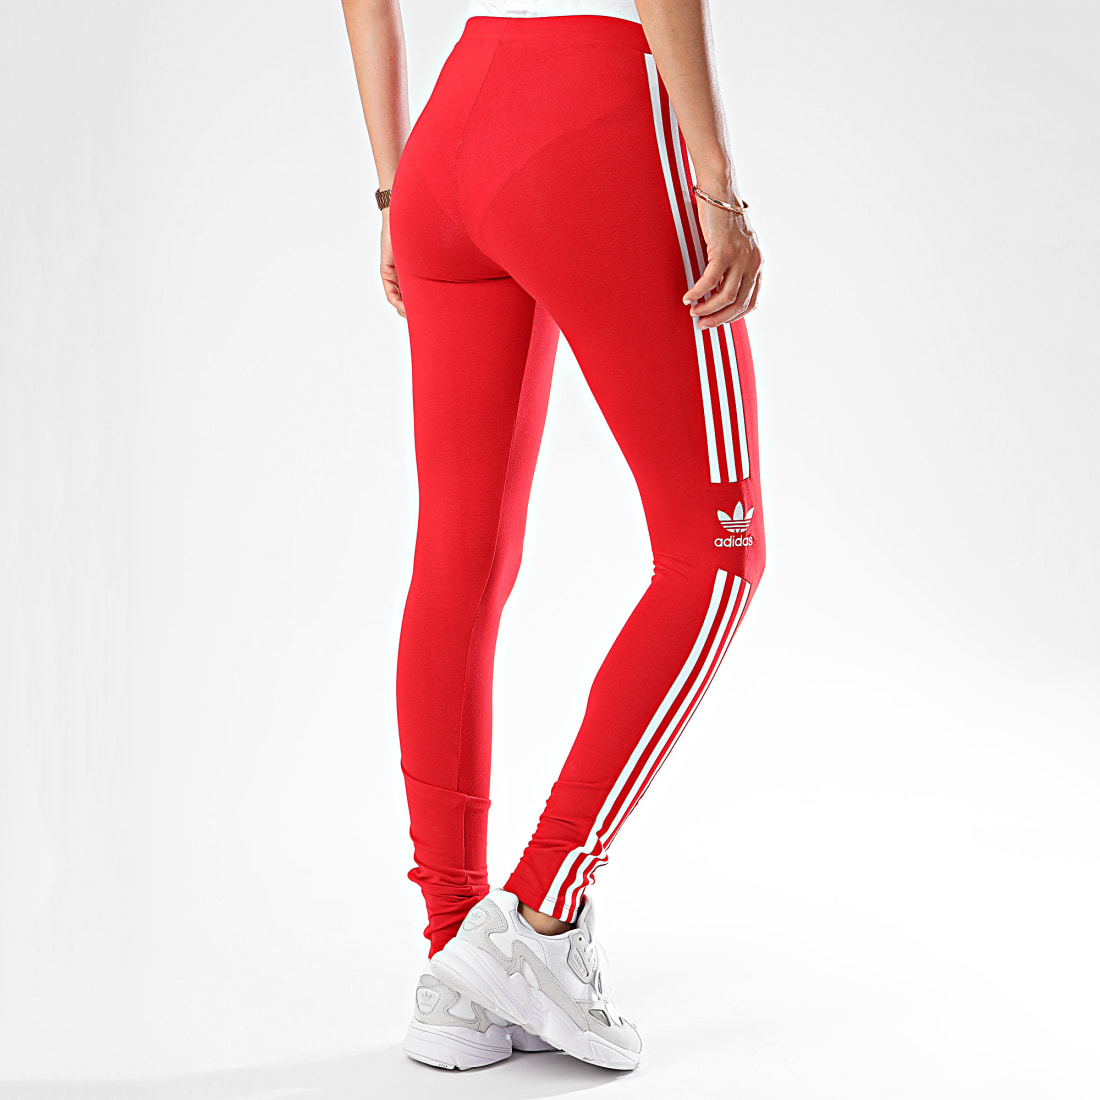 Adidas Originals Legging Femme A Bandes Trefoil Tight ED7490 Rouge Blanc - LaBoutiqueOfficielle.com